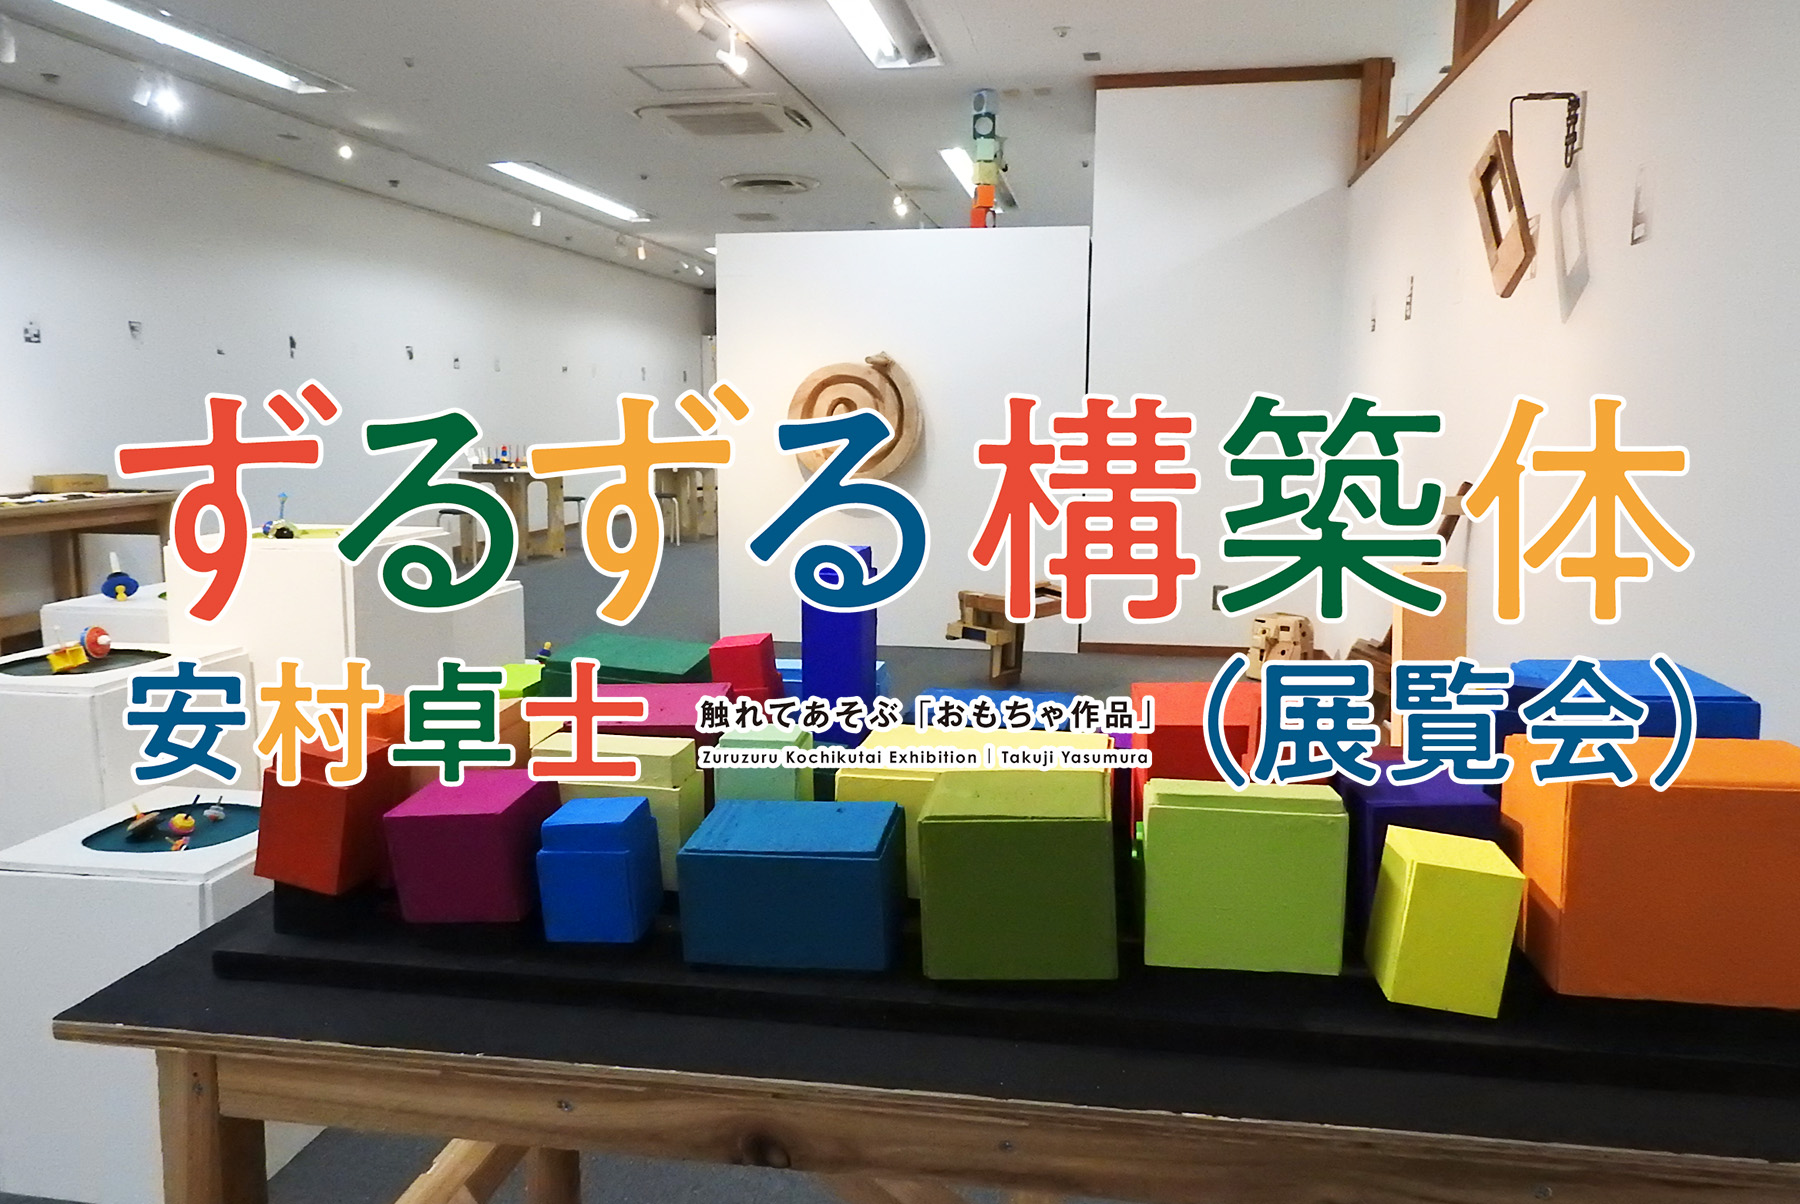 曽根裕×藤浩志 「ずるずる構築体（展覧会）安村卓士」でトークイベントを開催